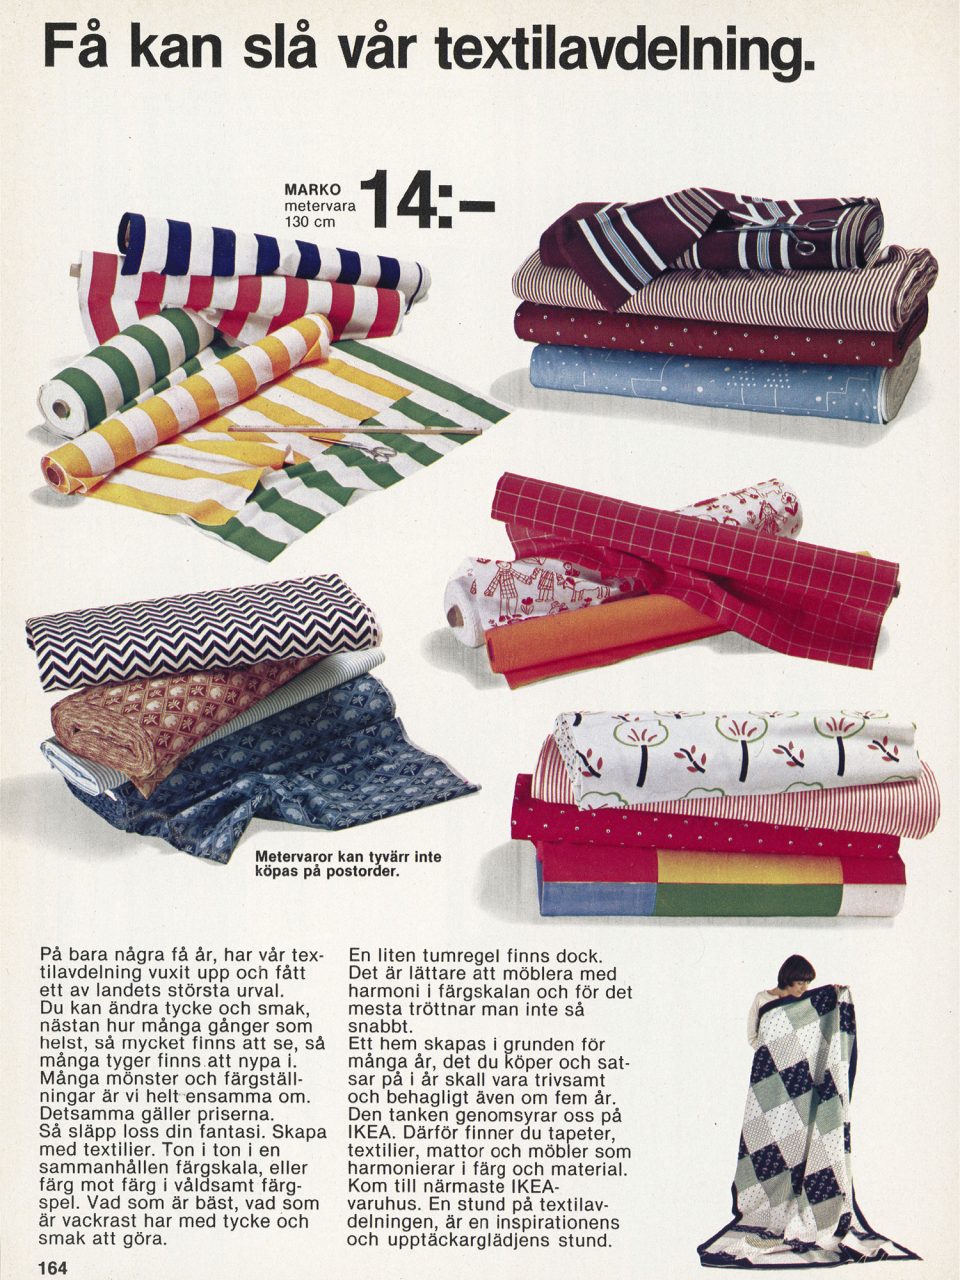 Sida i IKEA katalogen 1979 med rubriken 'Få kan slå vår textilavdelning' och bilder av färgstarka tyger med grafiska mönster.